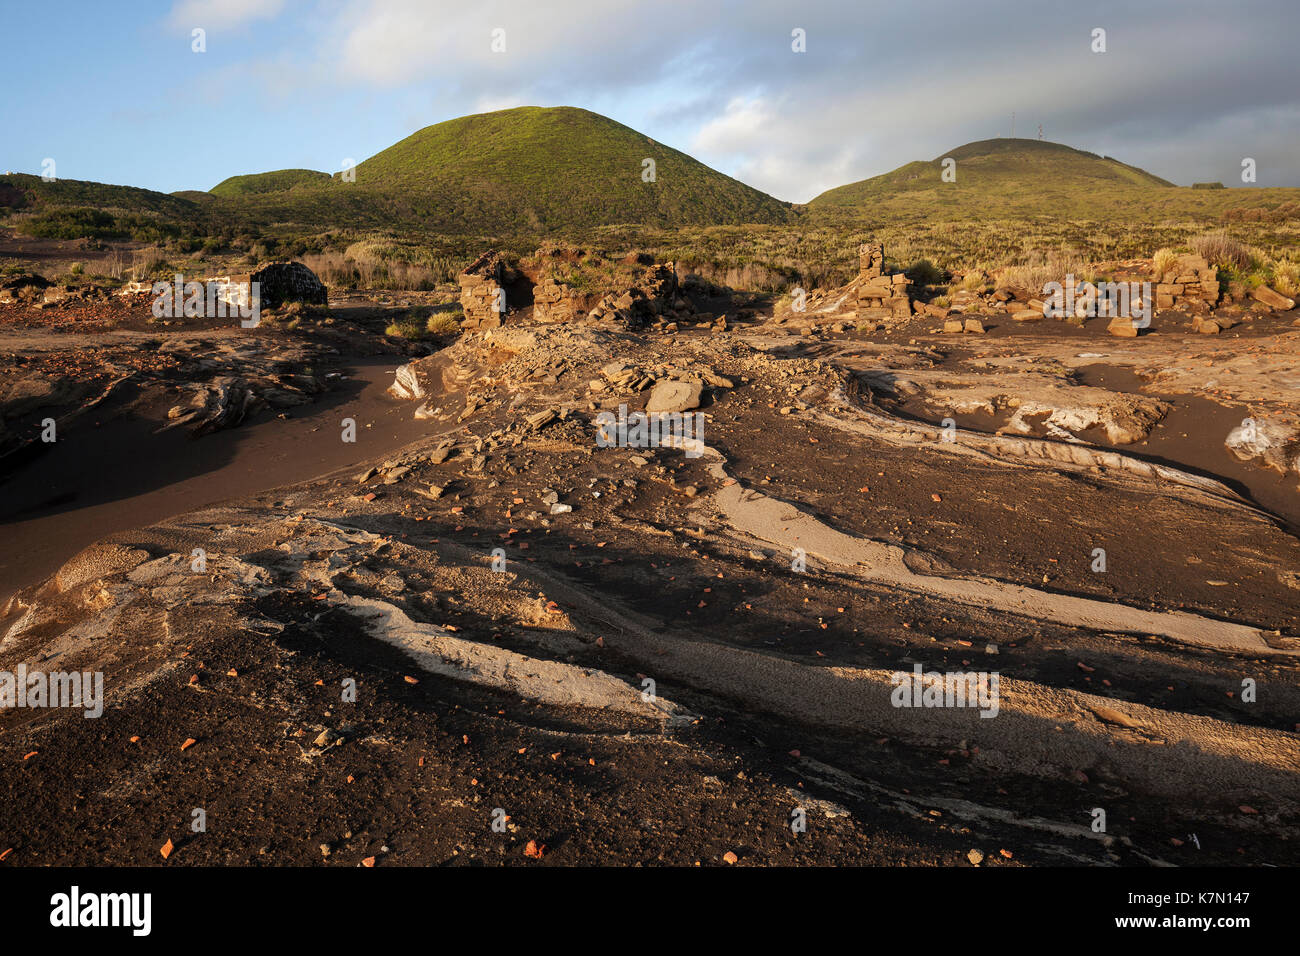 Reste des maisons s'élèvent de cendres de lave, derrière les volcans Cabeço do cabeço et carito vert, capelo, île de Faial, Açores Banque D'Images